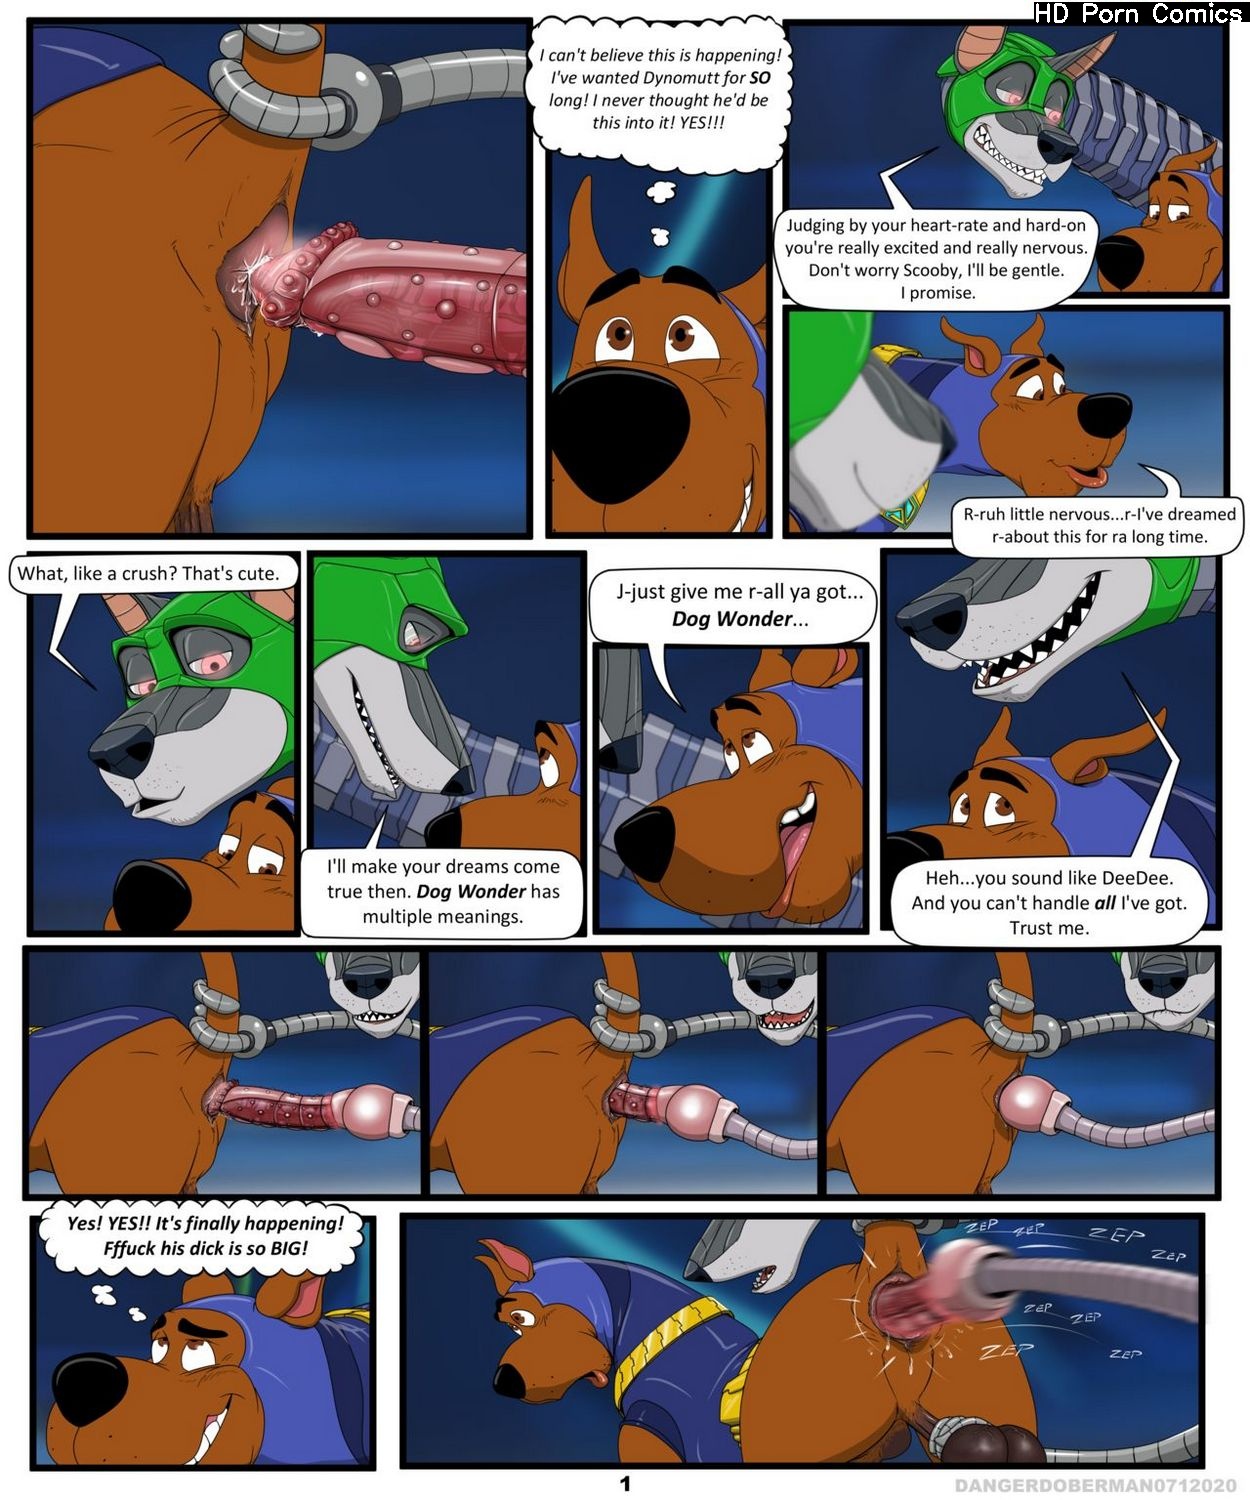 Scooby Doo Furry Xxx - Scooby's Dreams Come True comic porn | HD Porn Comics